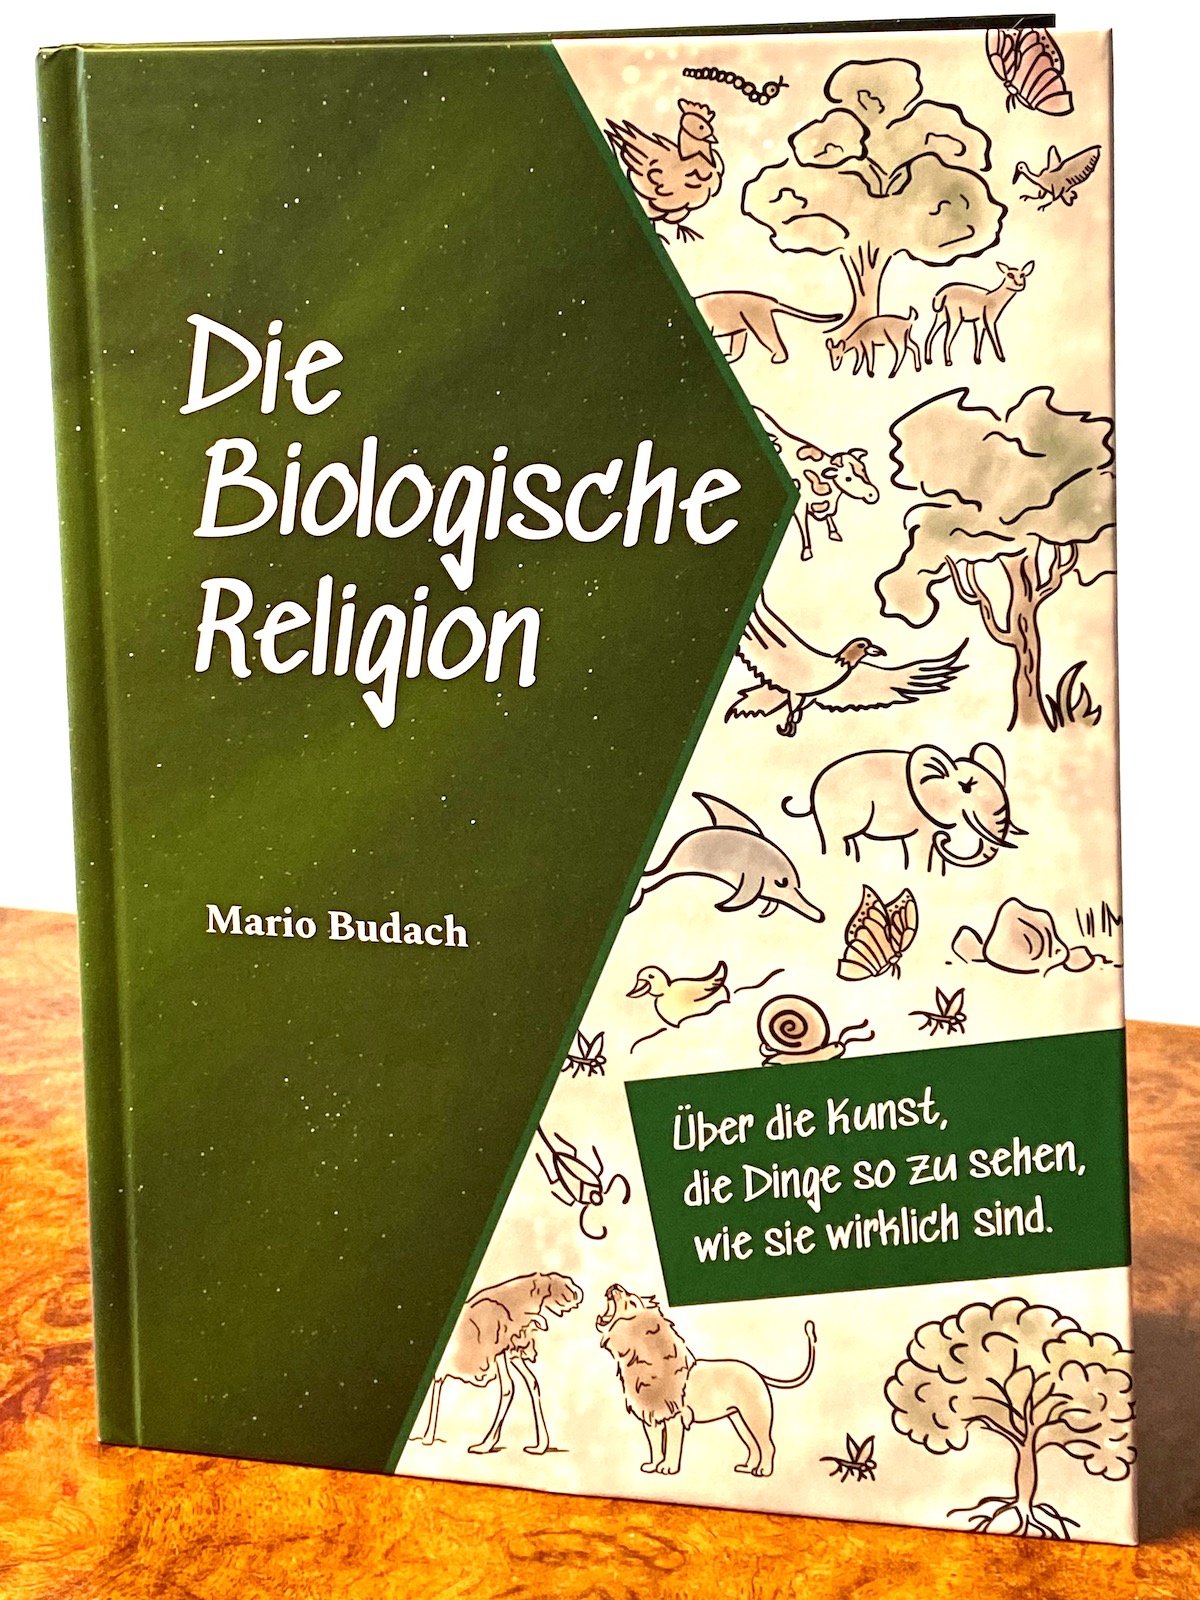 Die Biologische Revolution | Mario Budach, Guben